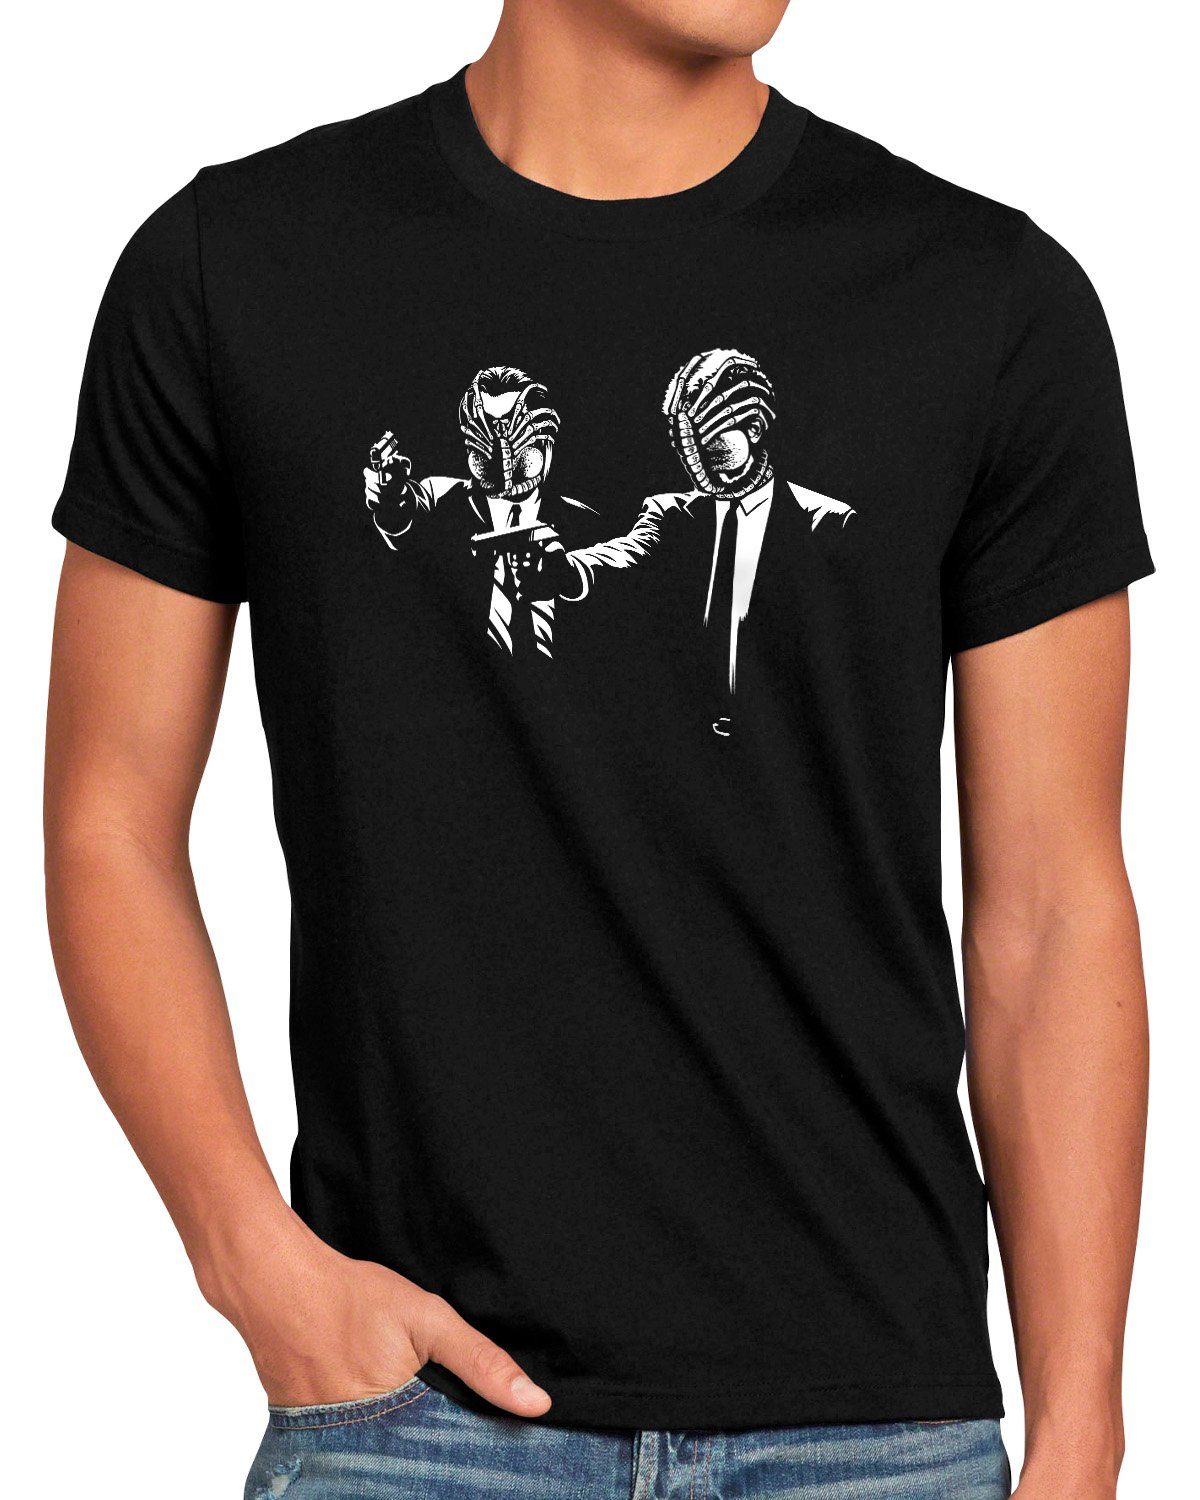 style3 Print-Shirt Herren Hugger pulp predator T-Shirt fiction Pulp alien xenomorph